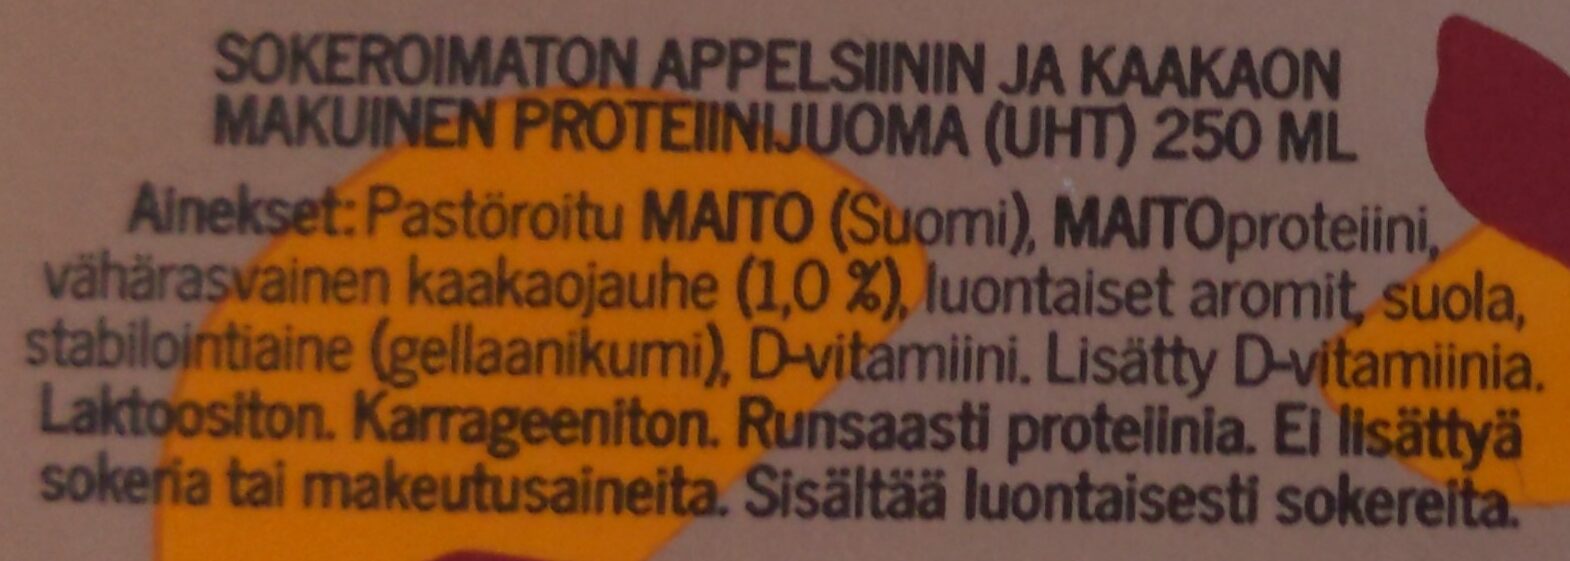 Hyvin sokeroimaton proteiinijuoma appelsiini-kaakao - Ainesosat